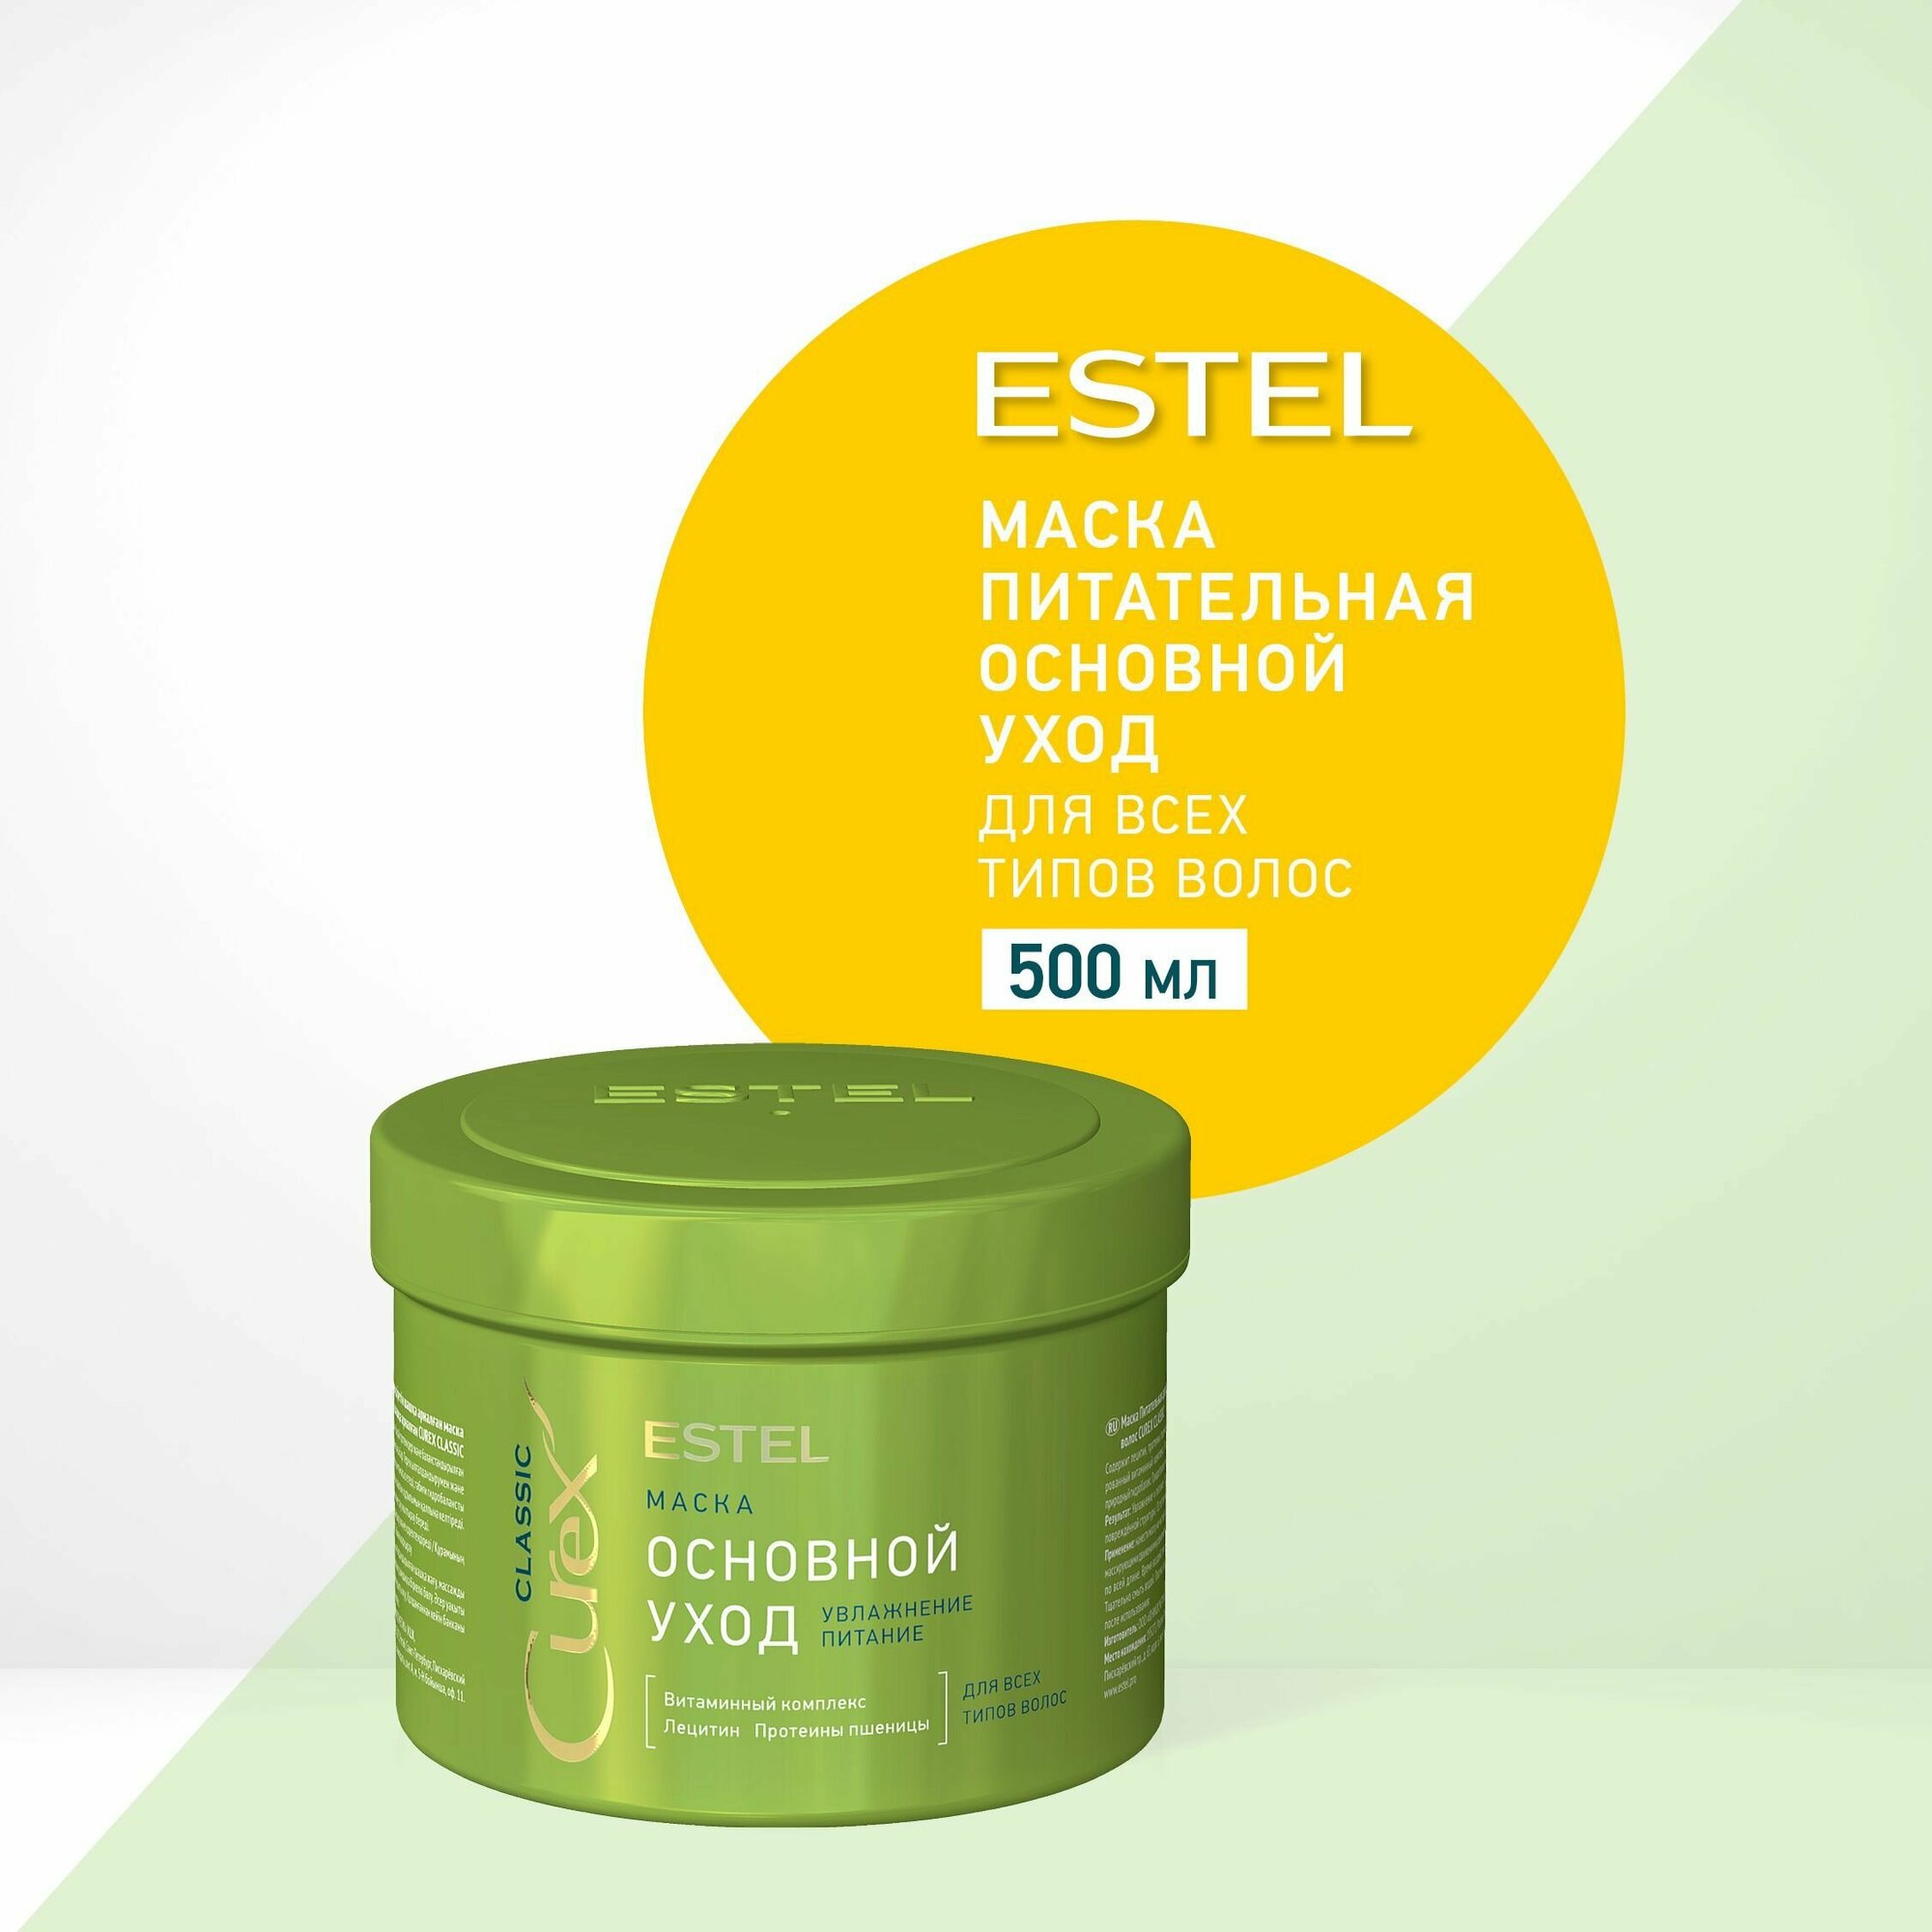 ESTEL Curex CLASSIC, Маска основной уход увлажняющая питательная для всех типов волос